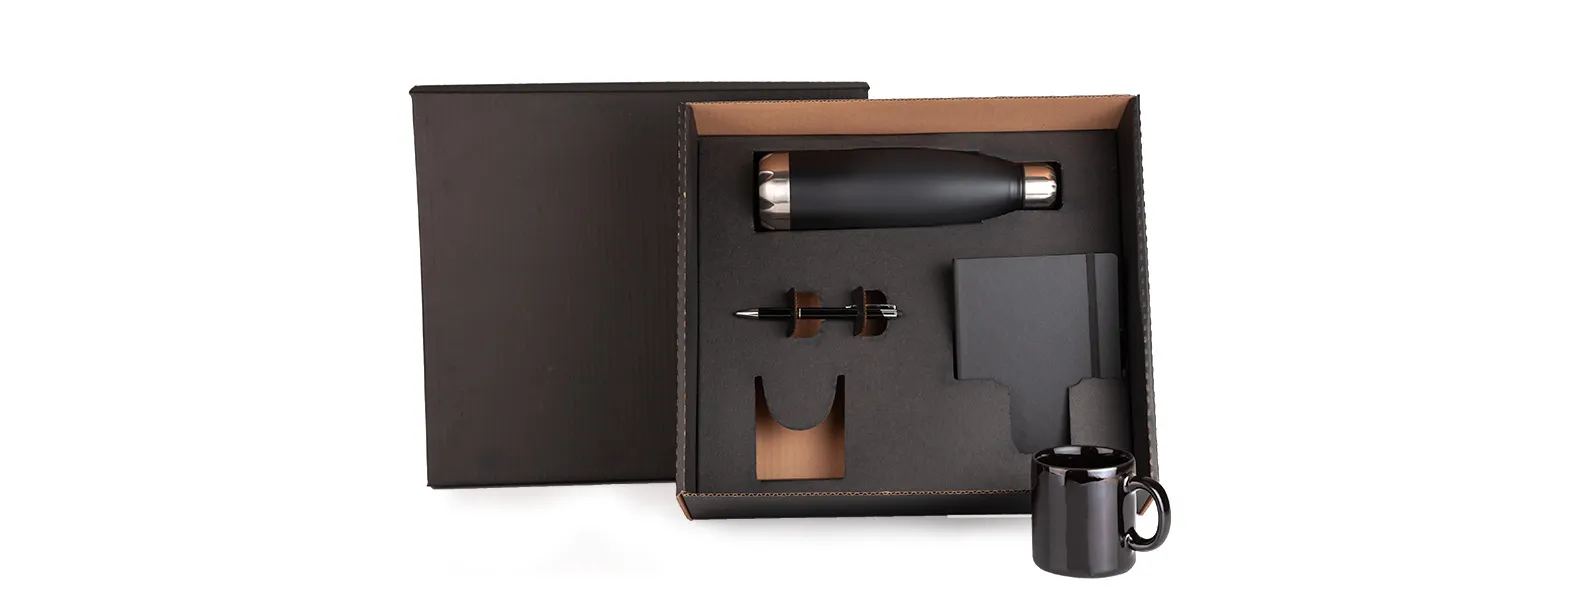 Kit composto por garrafa em aço Inox preta com tampa rosqueável, caneca em cerâmica preta, caderno para anotações preto com capa dura e caneta esferográfica em alumínio preta.